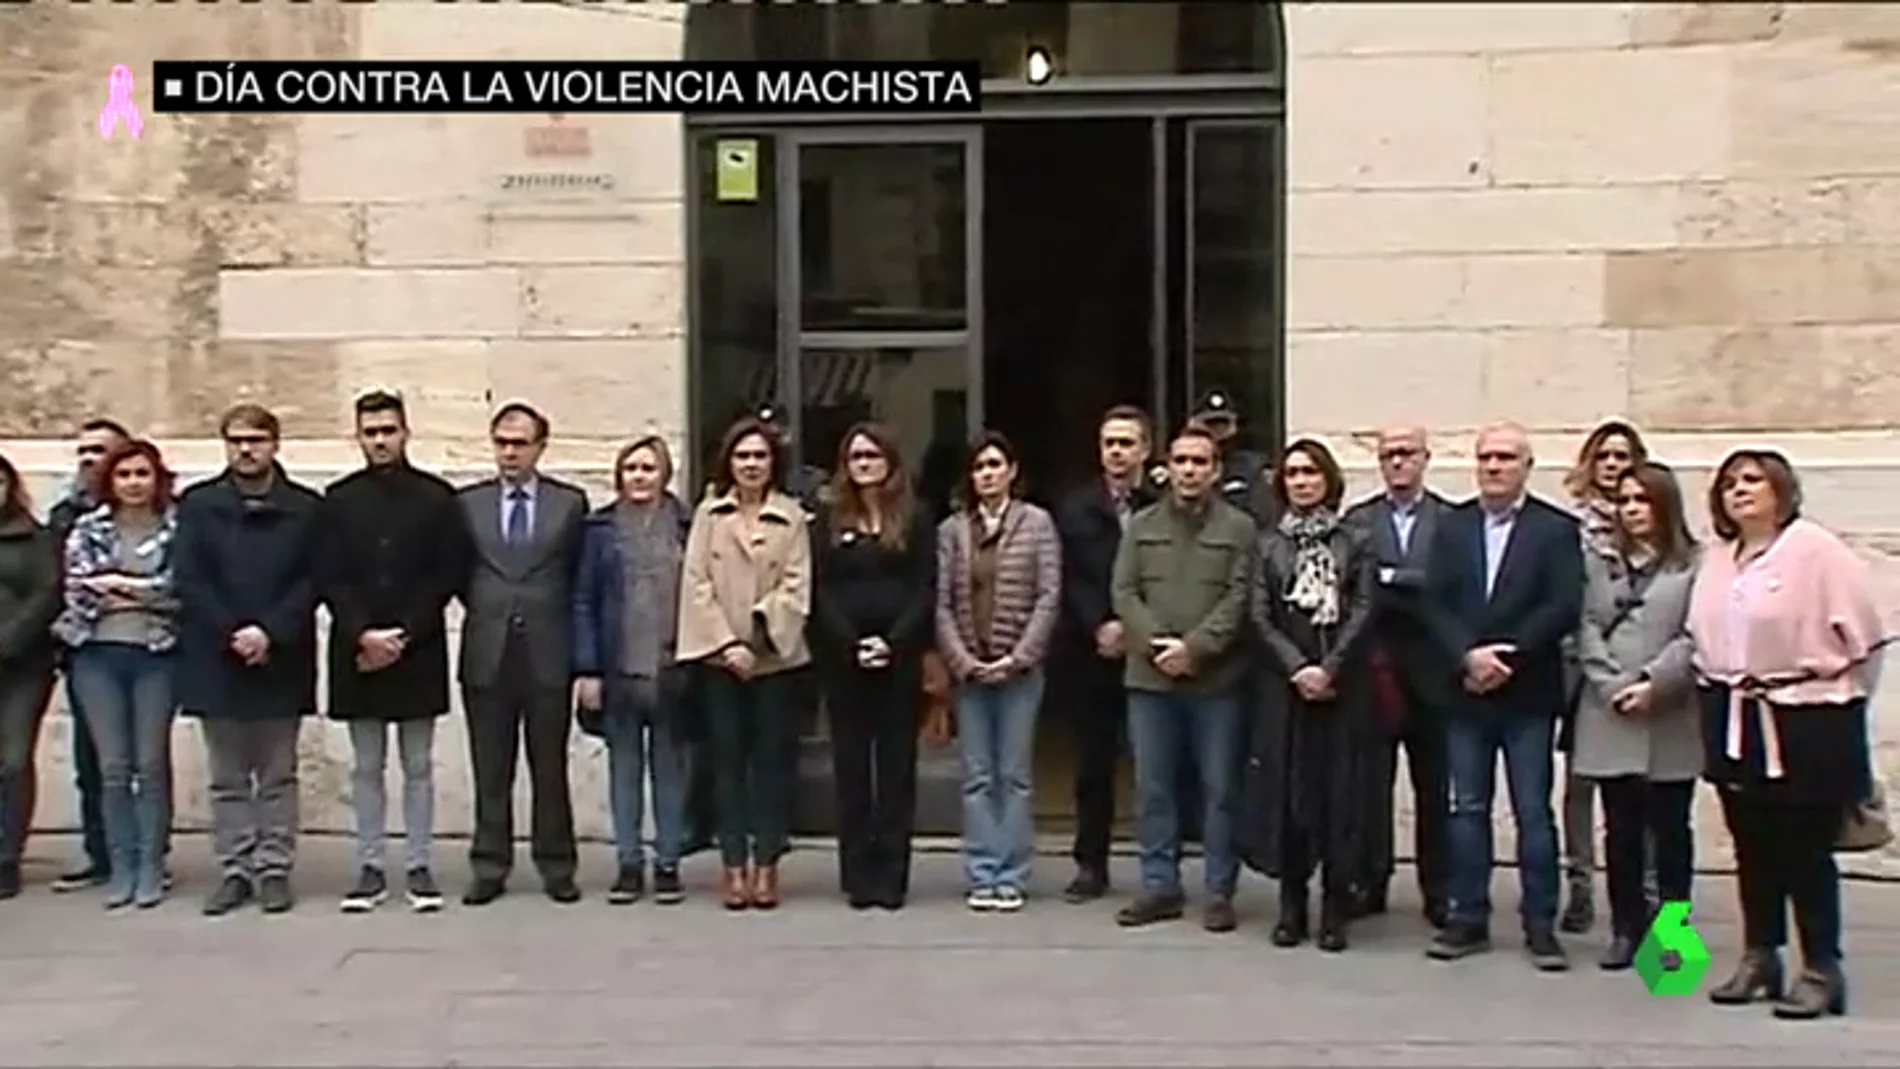 Contración en Vinaroz, en Valencia, contra la violencia machista